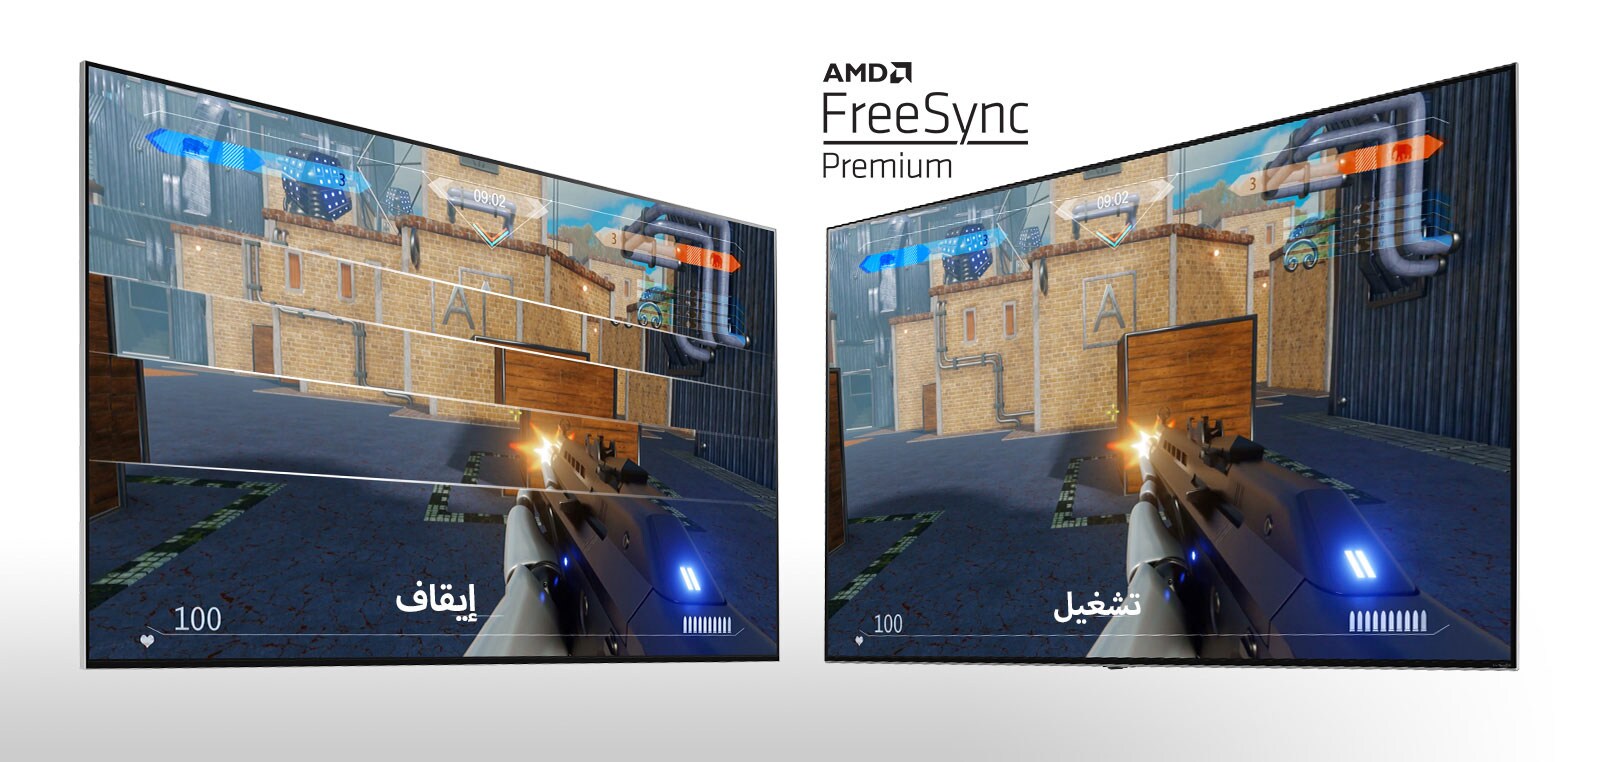 شاشتا تلفزيون متجانبتان تعرضان إحدى ألعاب القنص. تظهر الشاشة اليسرى تقنية FreeSync في وضع الإيقاف بينما تظهر الشاشة اليمنى تقنية FreeSync في نوضع التشغيل.